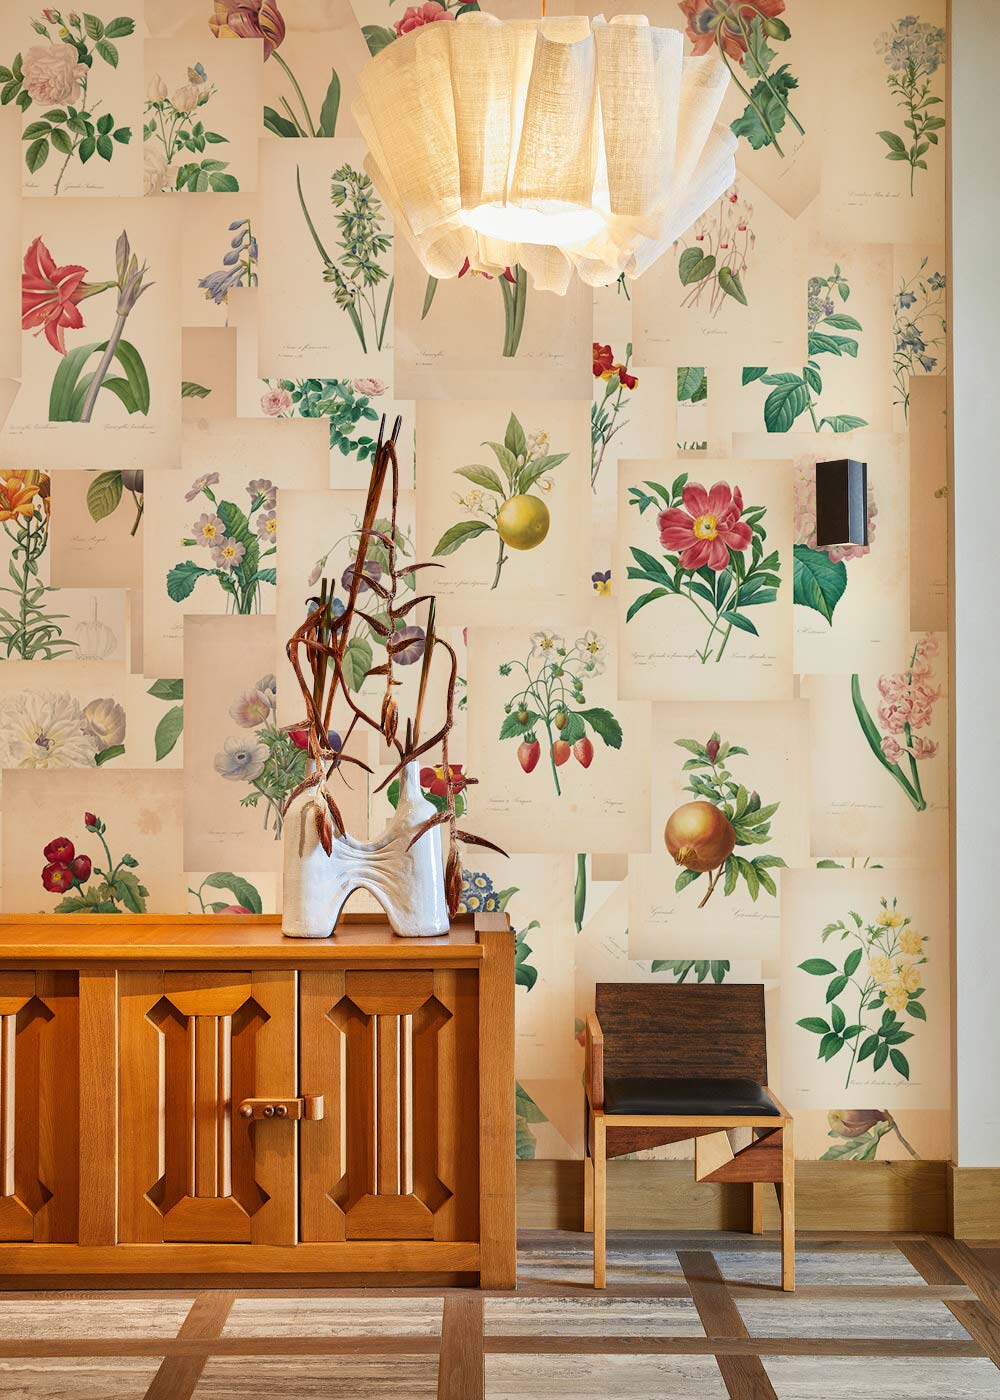 Fruits & Flowers Mural Wallpaper Living Room